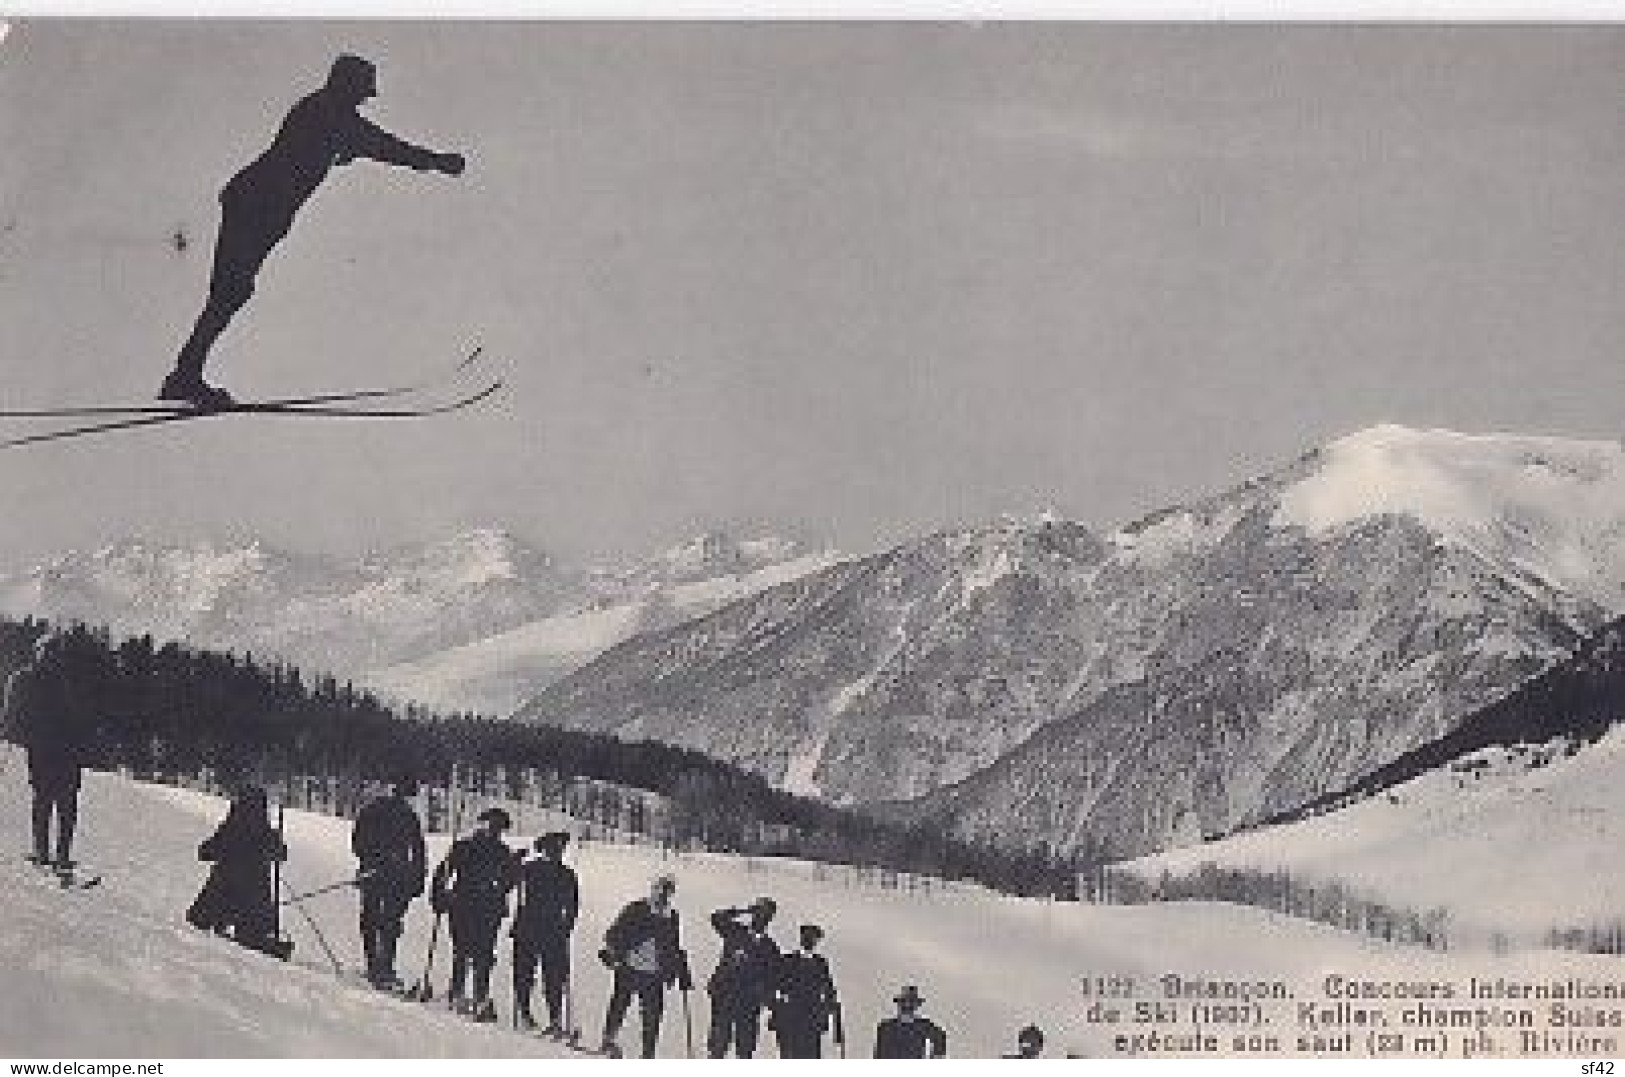 BRIANCON              CONCOURS INTERNATIONAL DE SKI  1907.   KELLER CHAMPION SUISSE - Deportes De Invierno